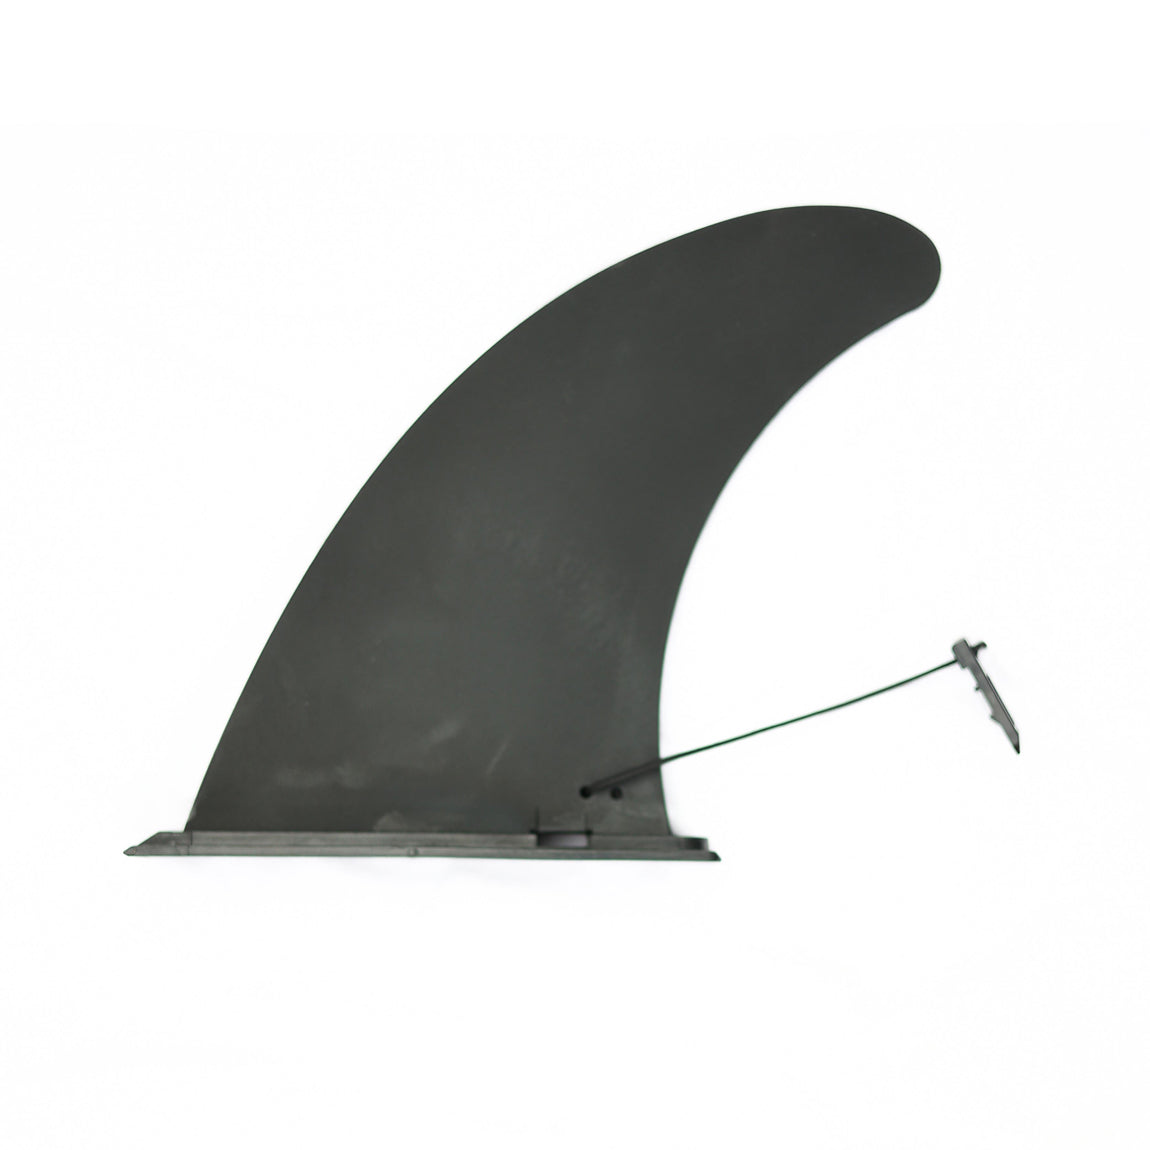 Rio Şişirilebilir Paddle Board - SUP 320 cm